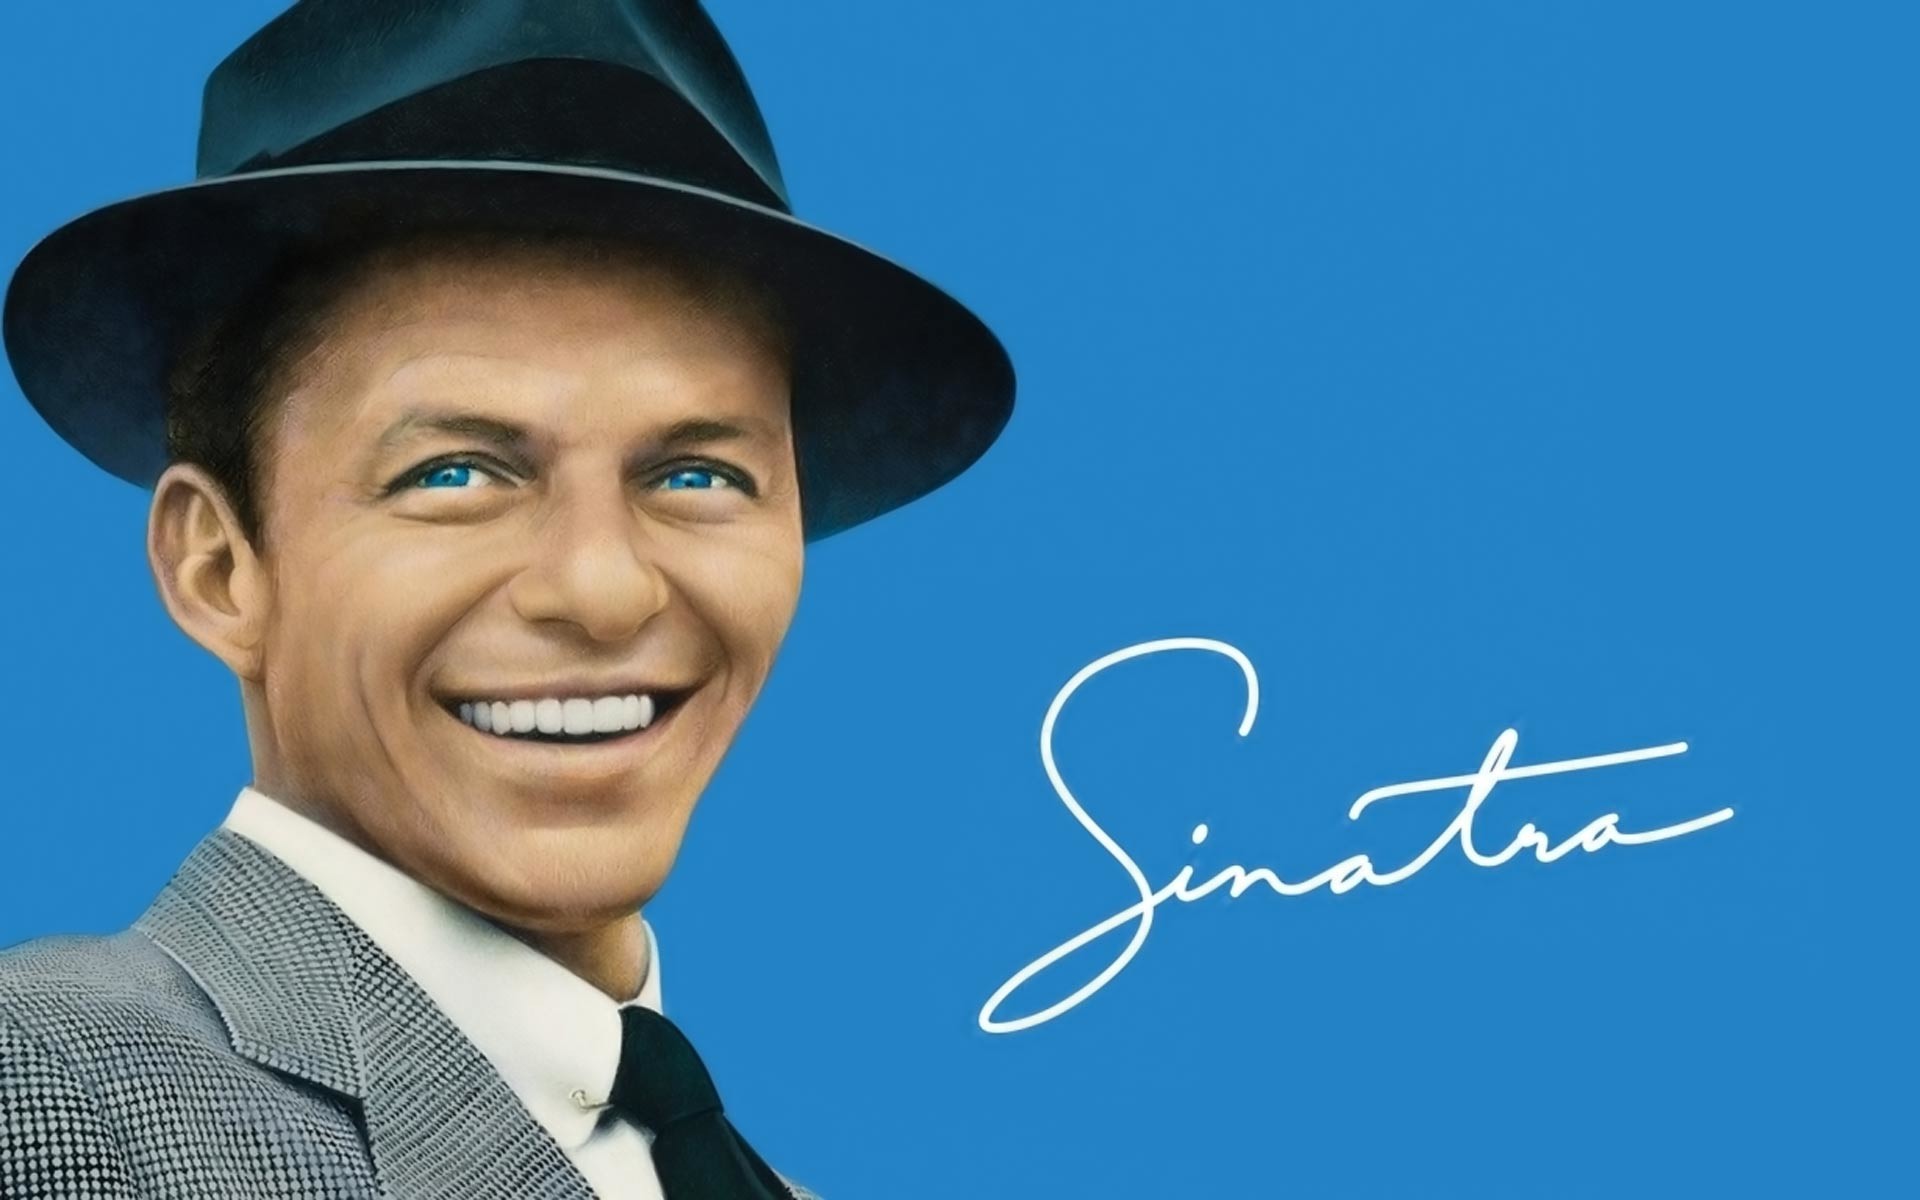 1920x1200 Frank Sinatra HD Wallpaper | Hintergrund |  | ID:529470 - Wallpaper  Abyss